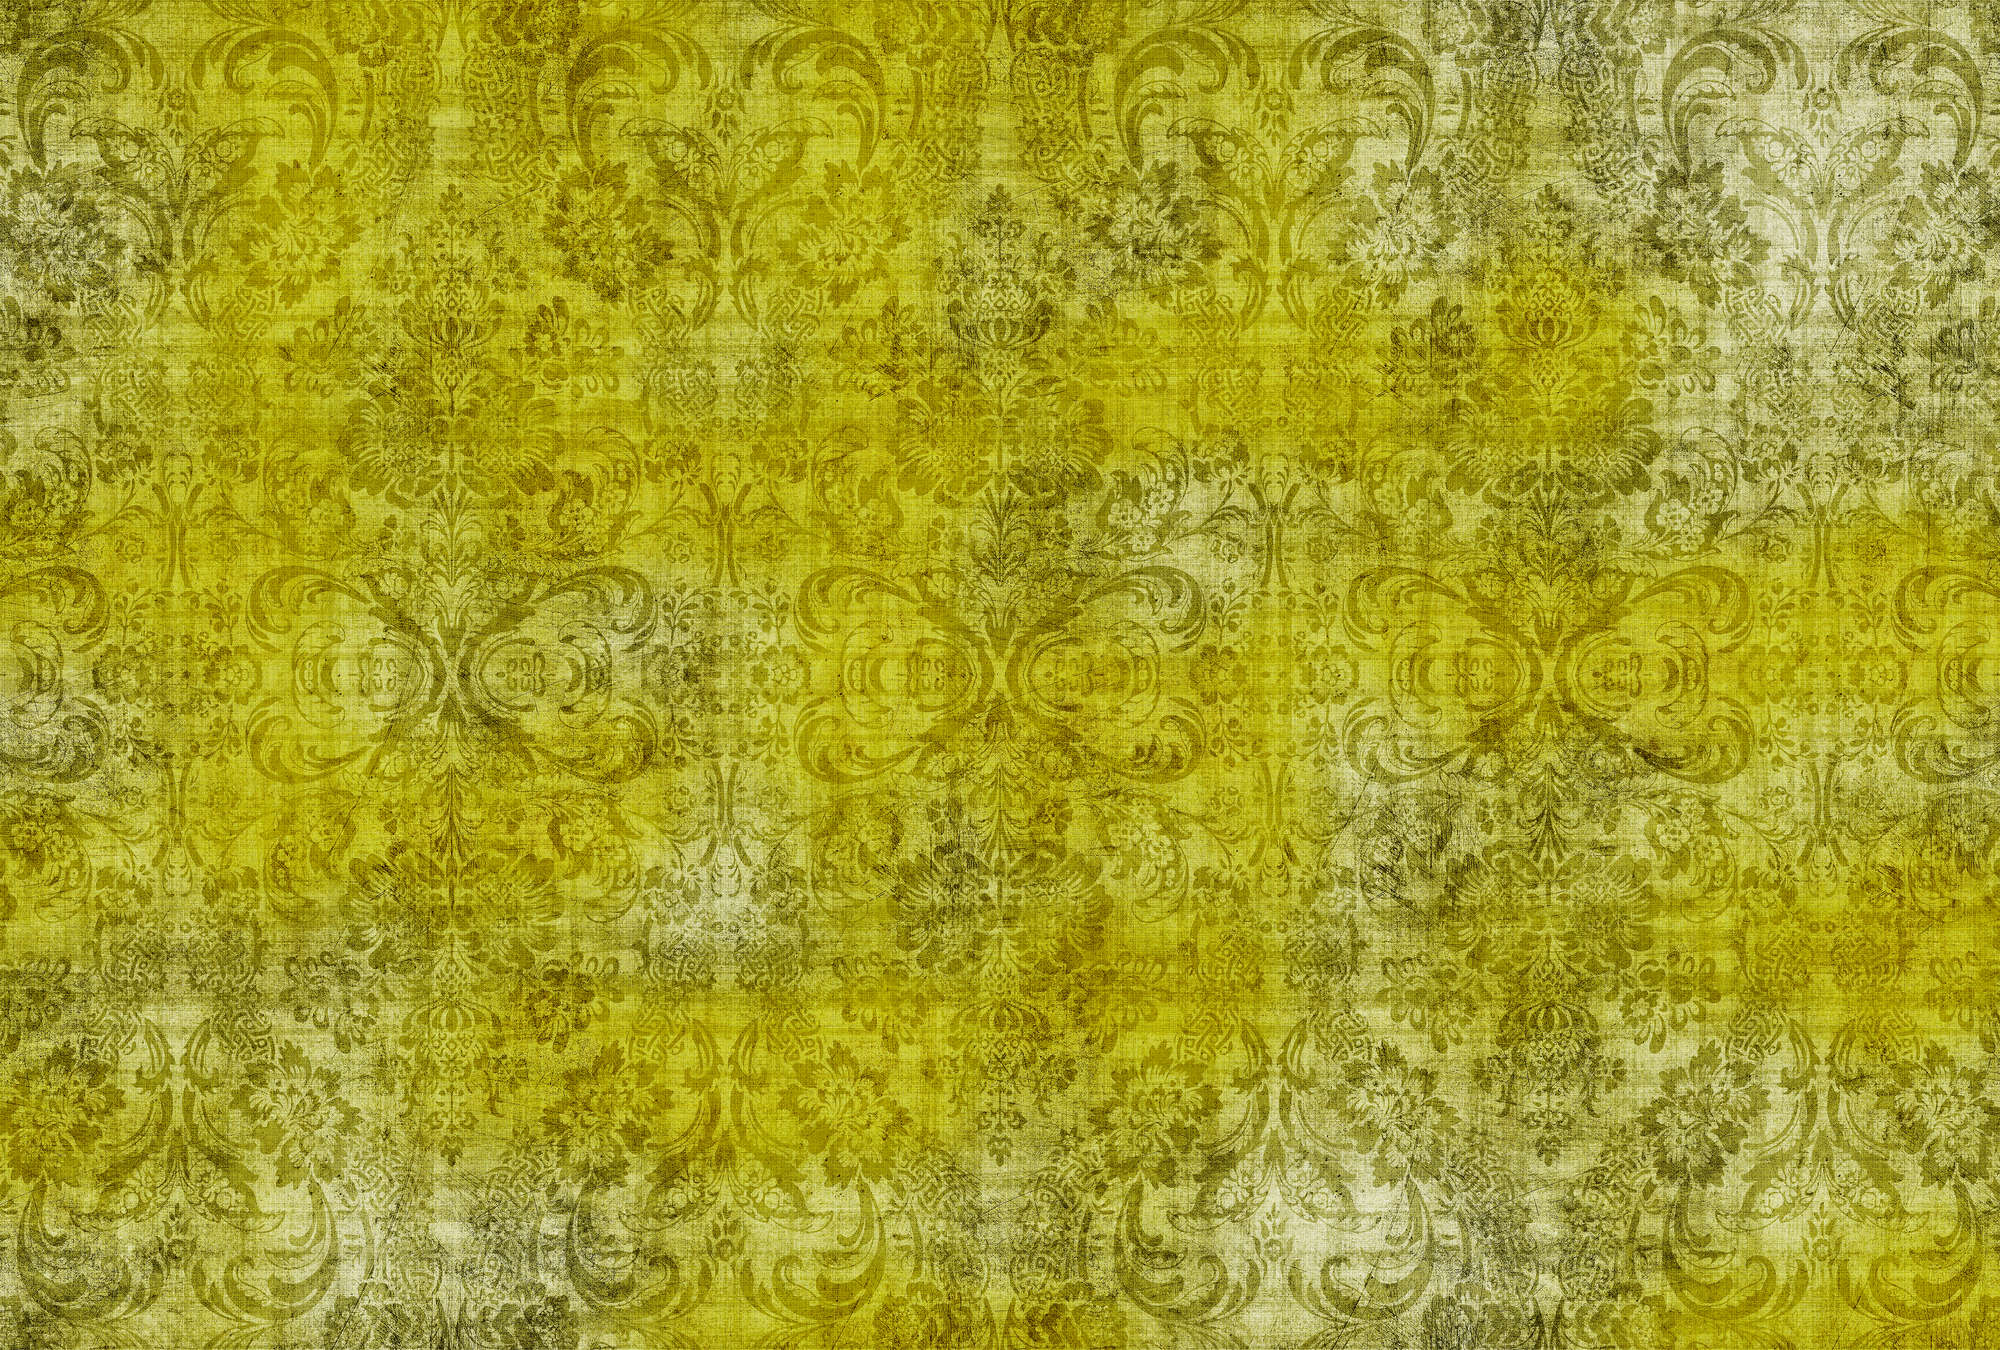             Old damask 1 - Ornements sur papier peint jaune chiné à structure lin naturel - jaune | Intissé lisse mat
        